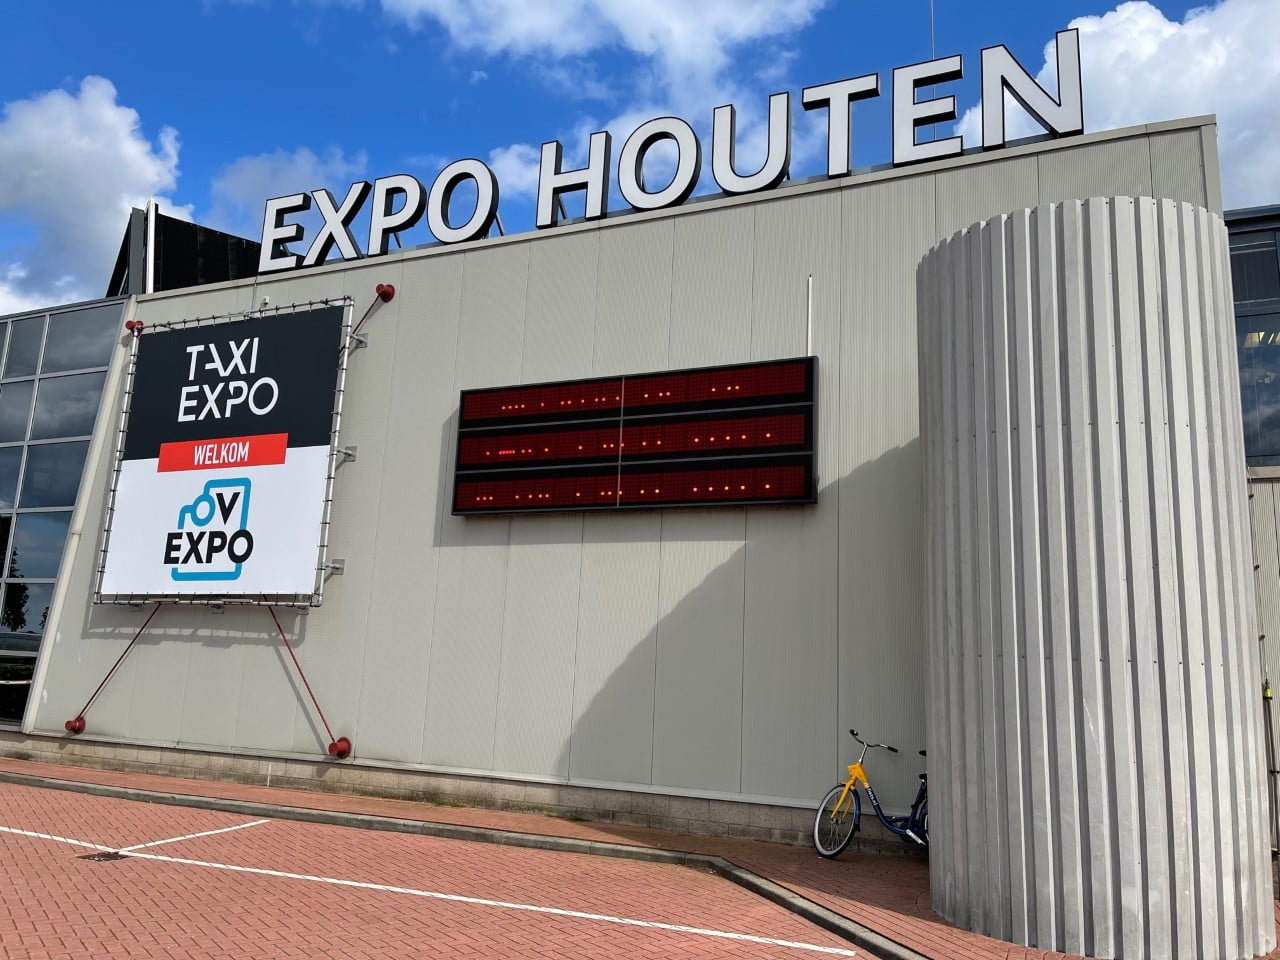 Taxi Expo, specjalne miejsce spotkań